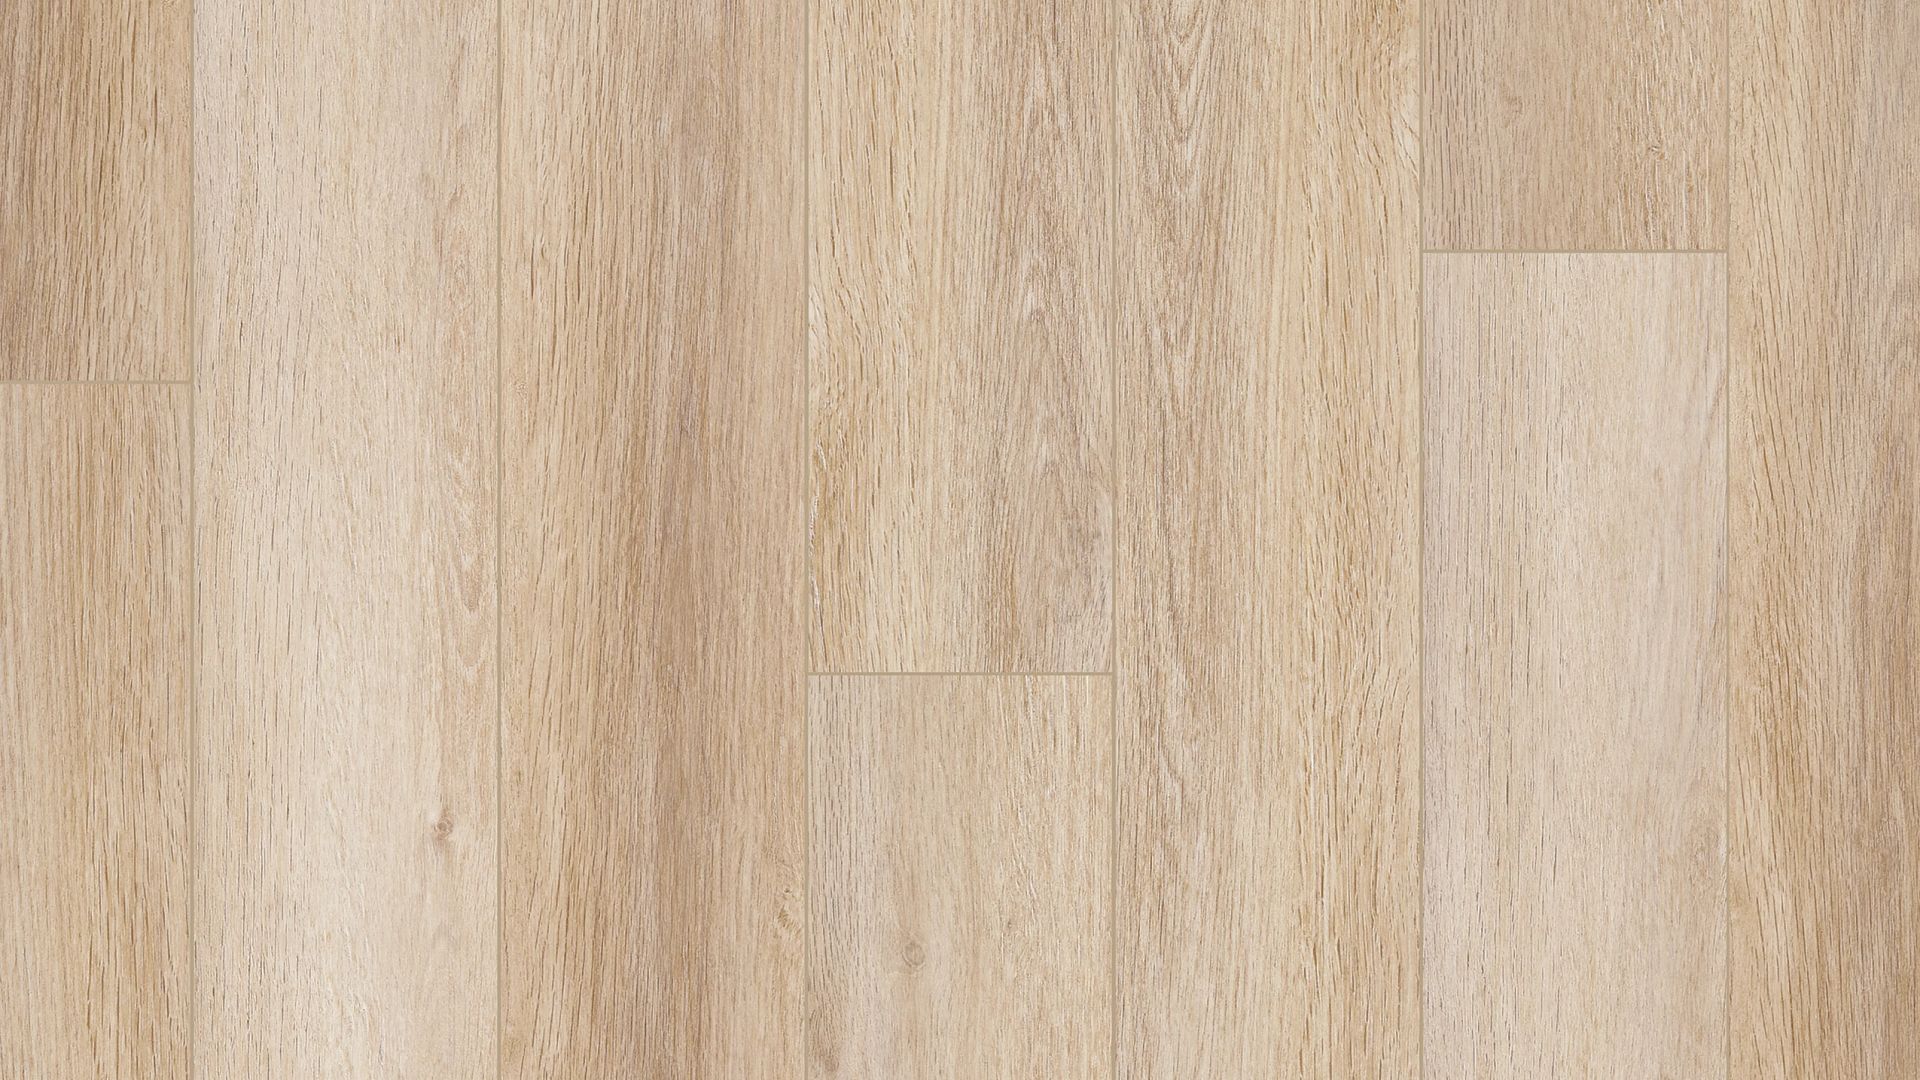 Aldergrove Oak waterproof luxury vinyl wood look flooring